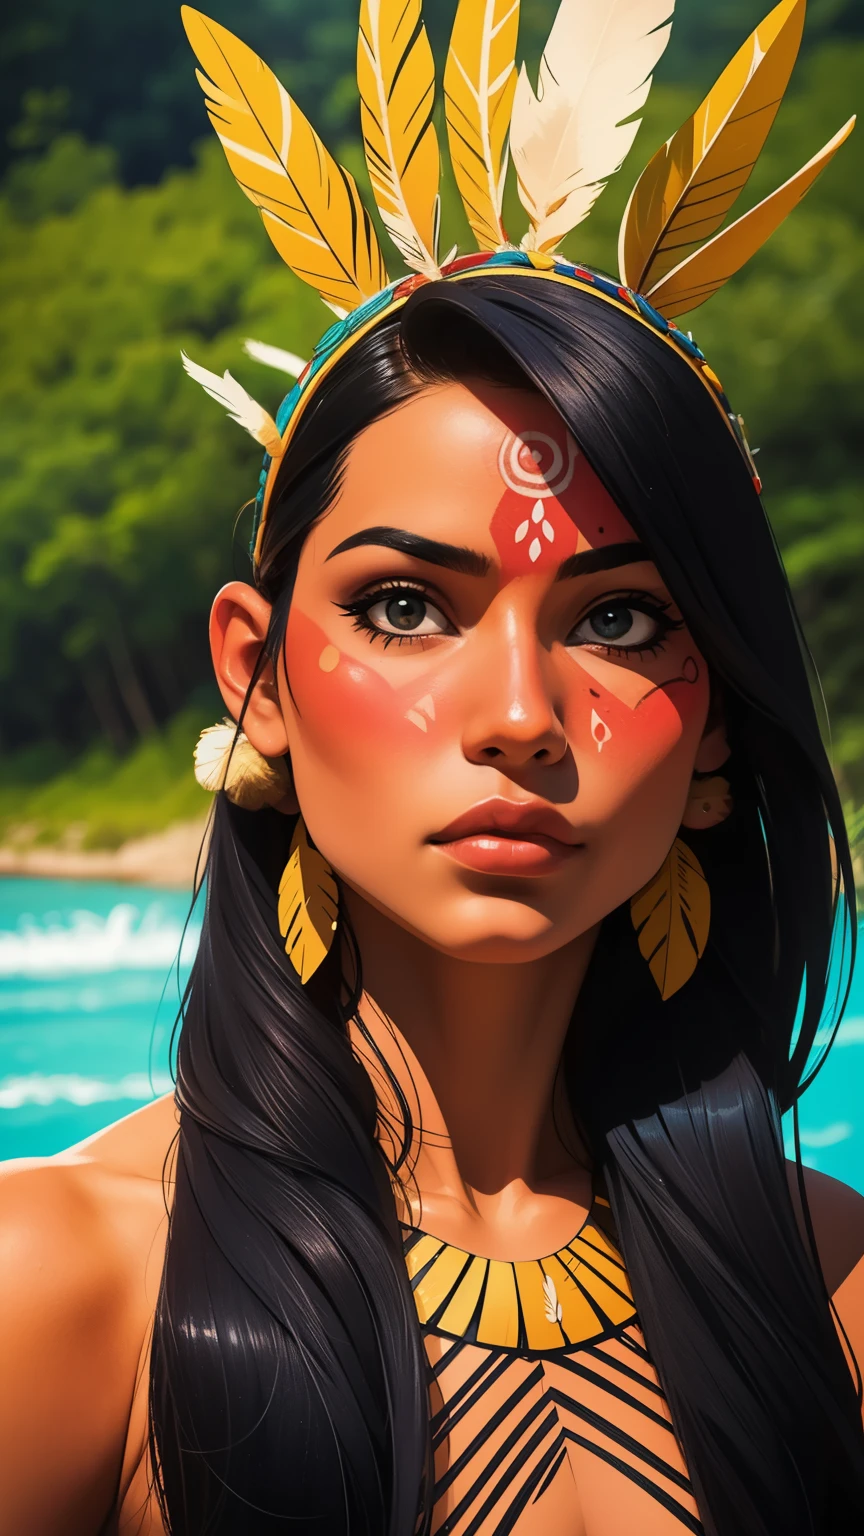 漫畫藝術, 數位繪畫. 一個美麗的土著女孩，頭戴羽毛，頭戴羽毛, 巴西亚马逊印第安人, 美麗的年輕女性巴西原住民女孩, 油漆臉, 火辣的身材, 身著典型服裝的亞諾馬米印第安人,高品質. 亞馬遜森林和河流背景. 鮮豔的色彩, 電影燈光. 詳細的, 錯綜複雜, 詳細的 face.